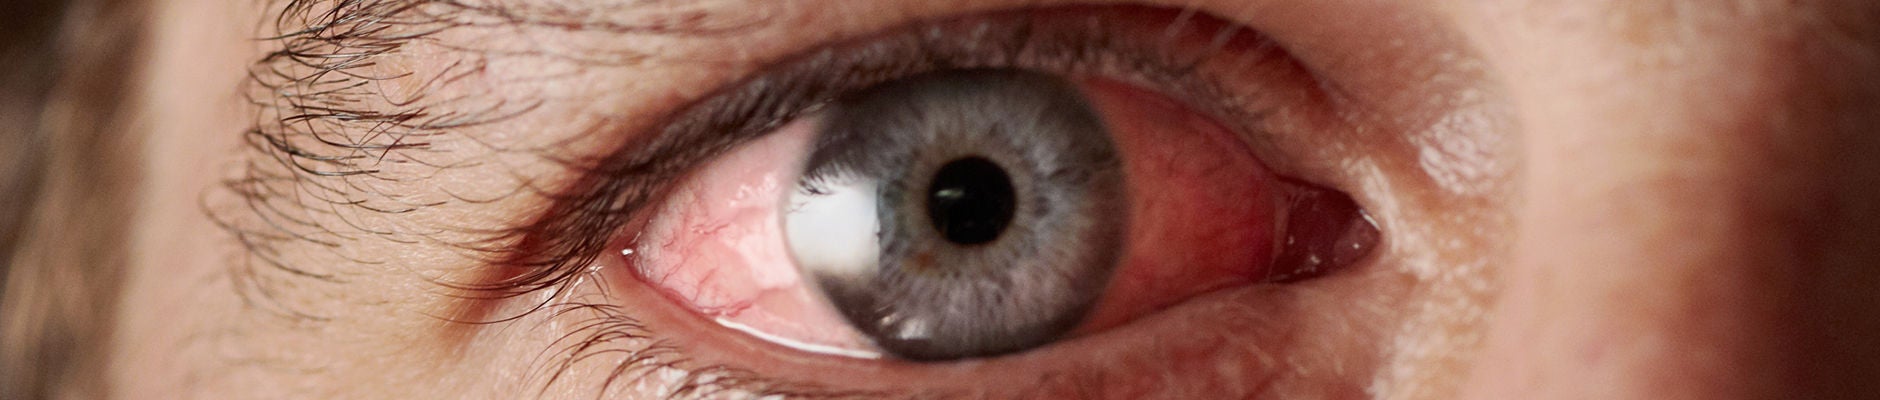 Closeup of irritated red bloodshot eye